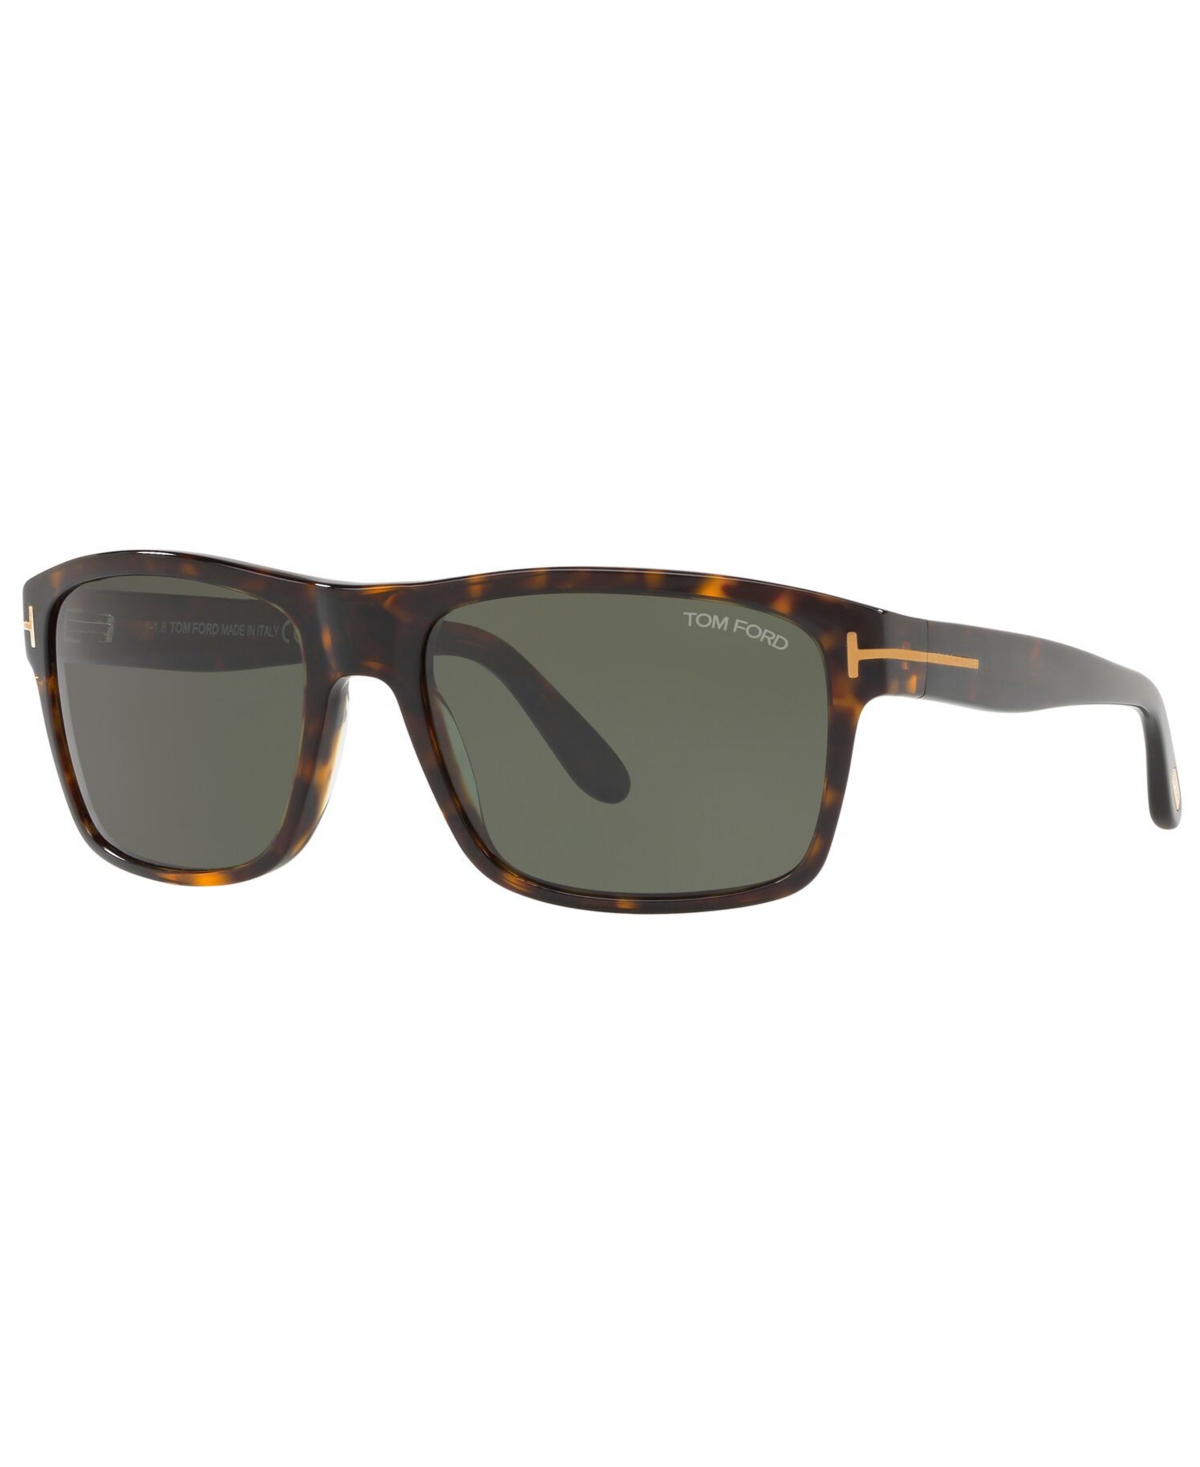 Tom Ford Men's Sunglasses, Tr001026 In Tortoise Tan,green